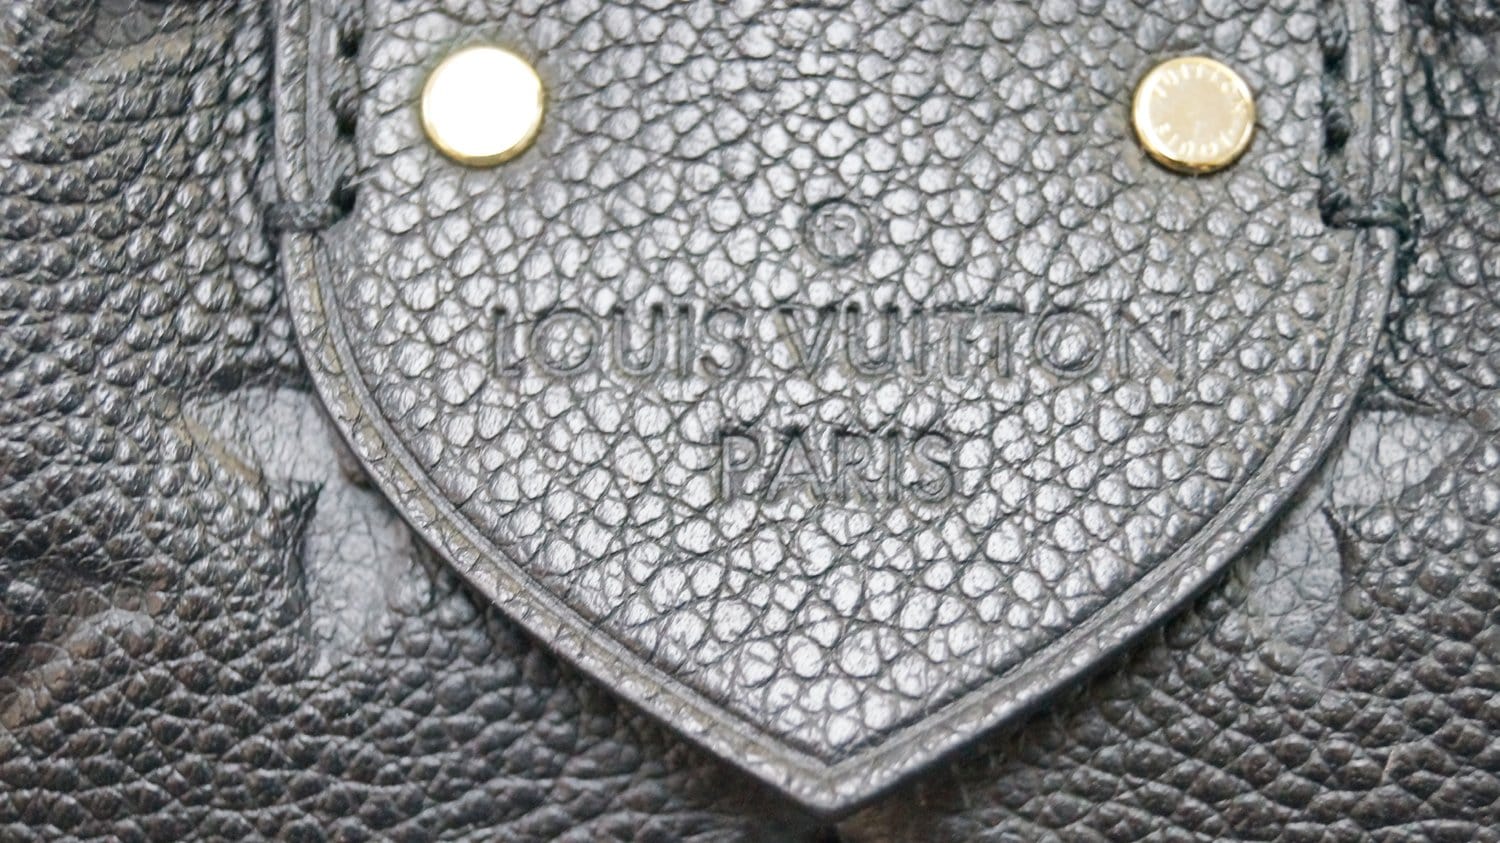 Louis Vuitton Mazarine MM in Empreinte Noir - SOLD